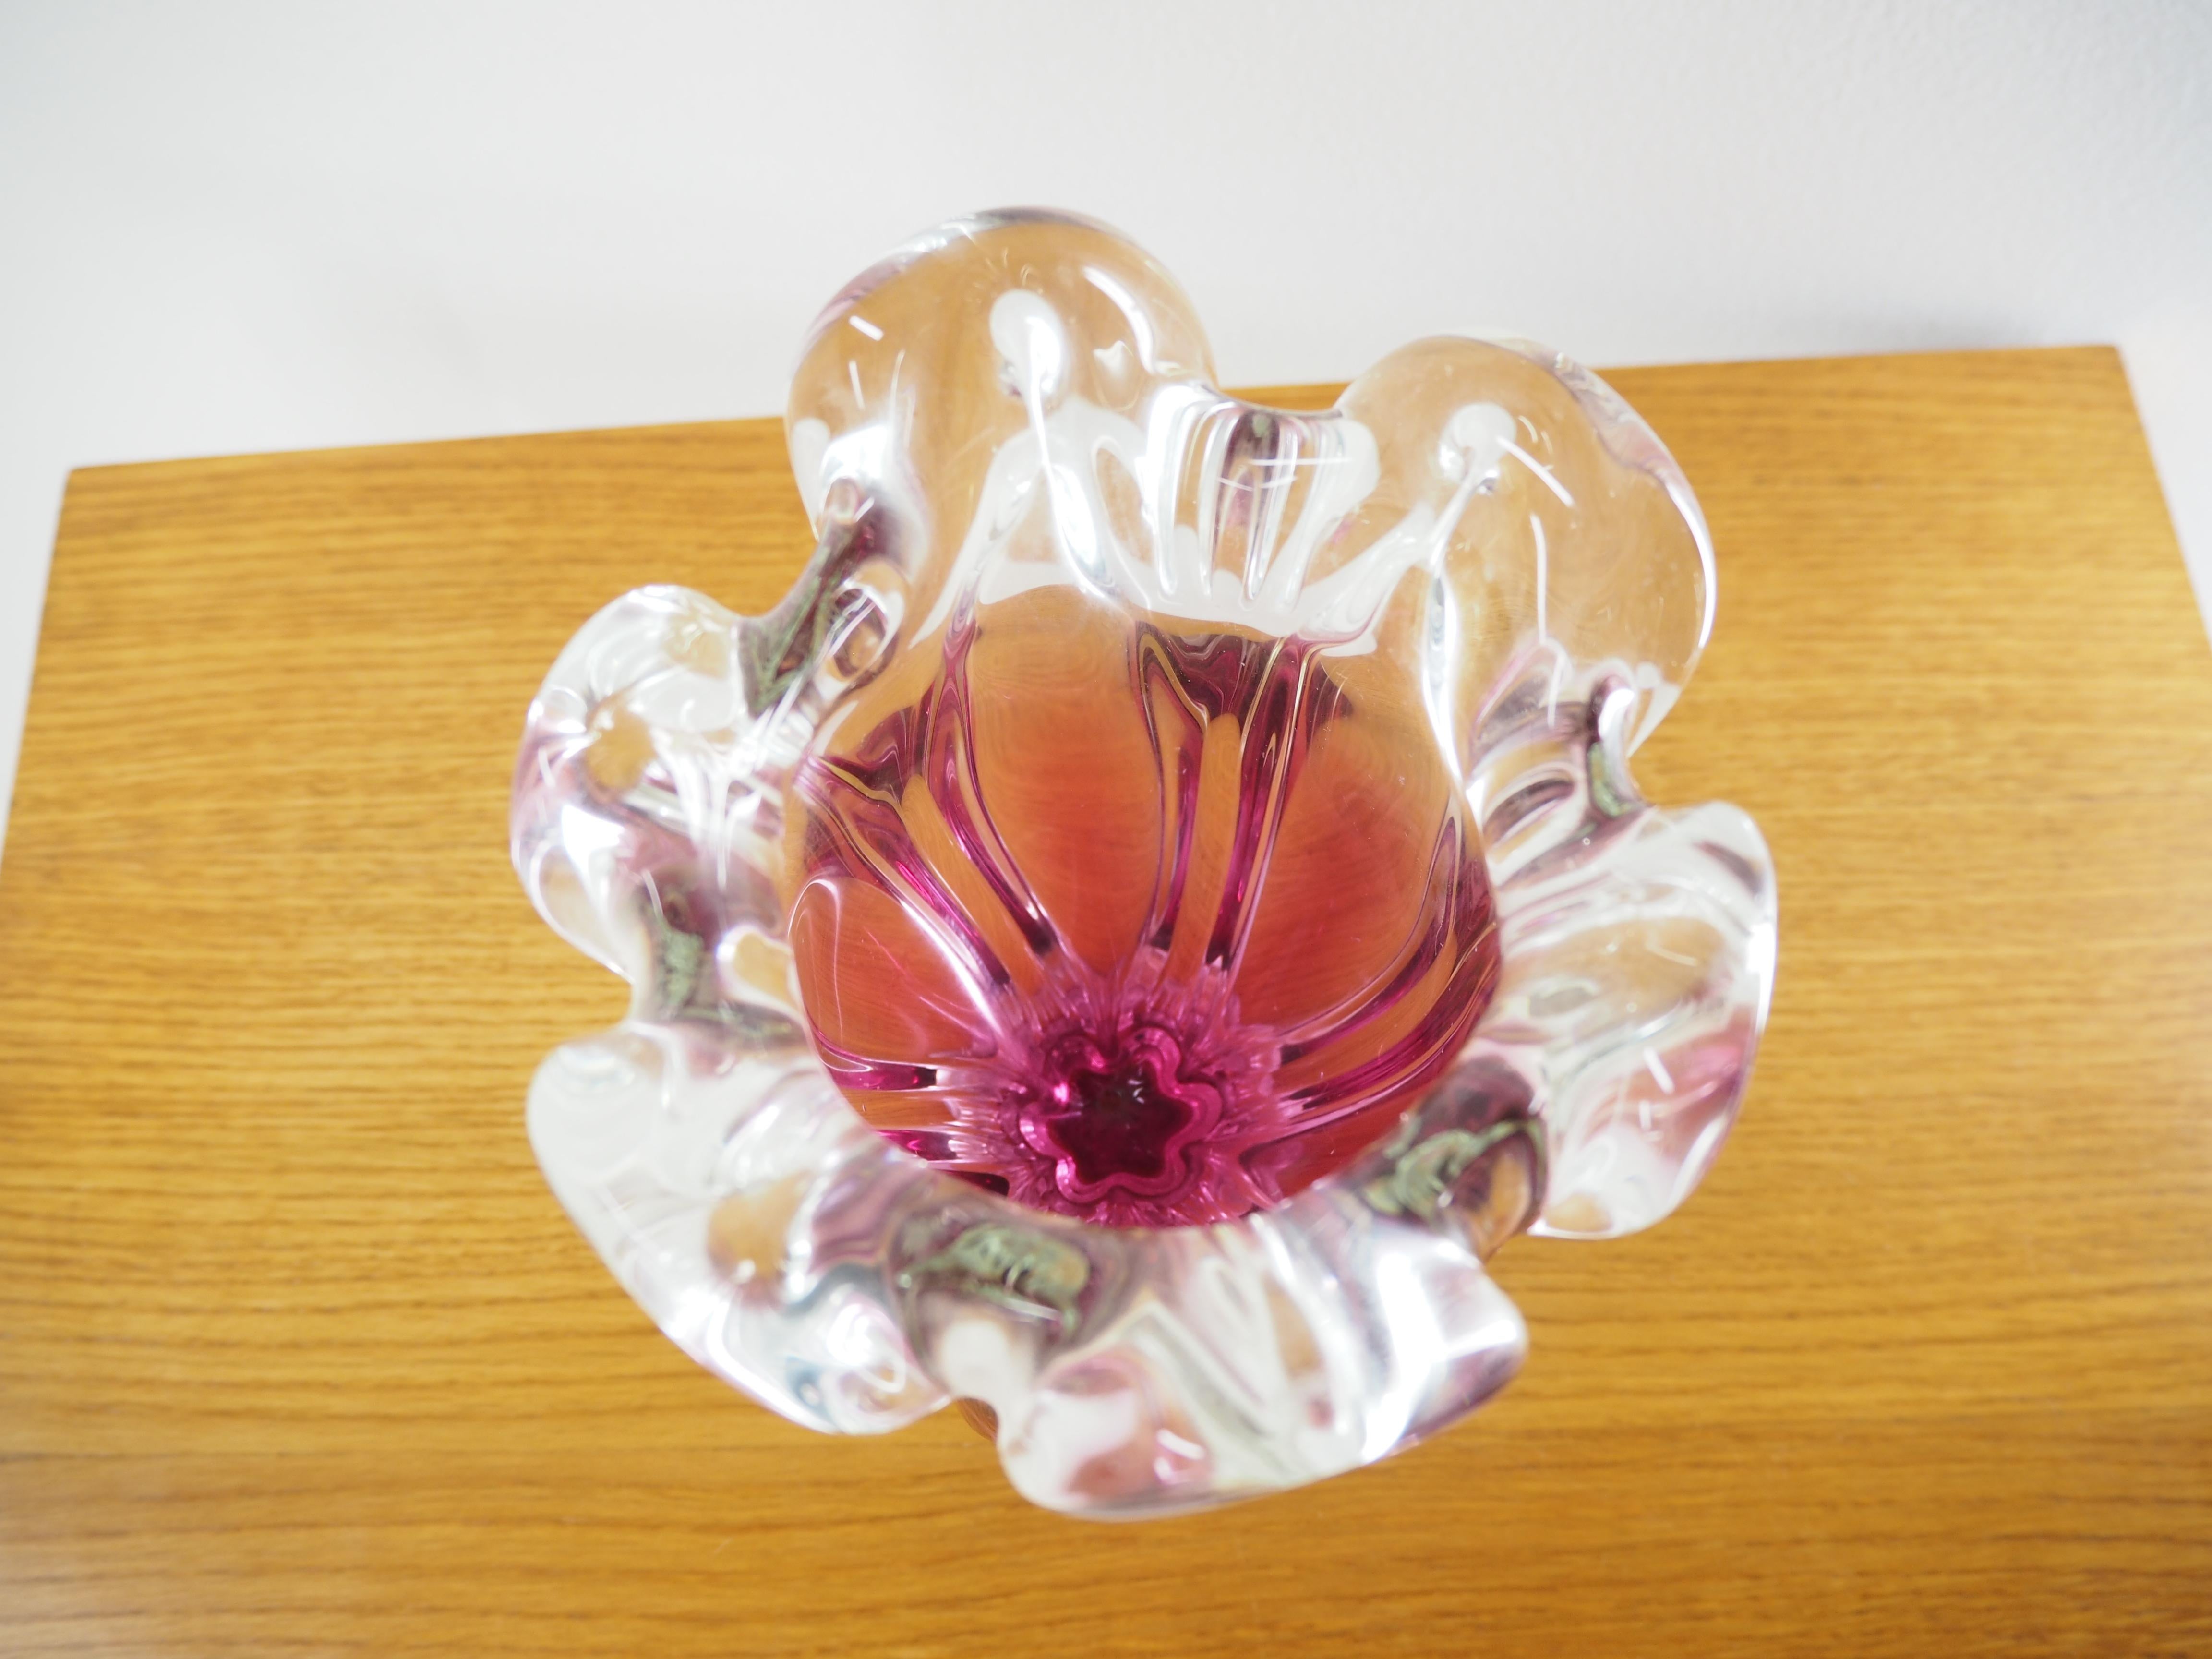 Czech Art Glass Vase by Josef Hospodka for Chribska Glassworks, 1960s